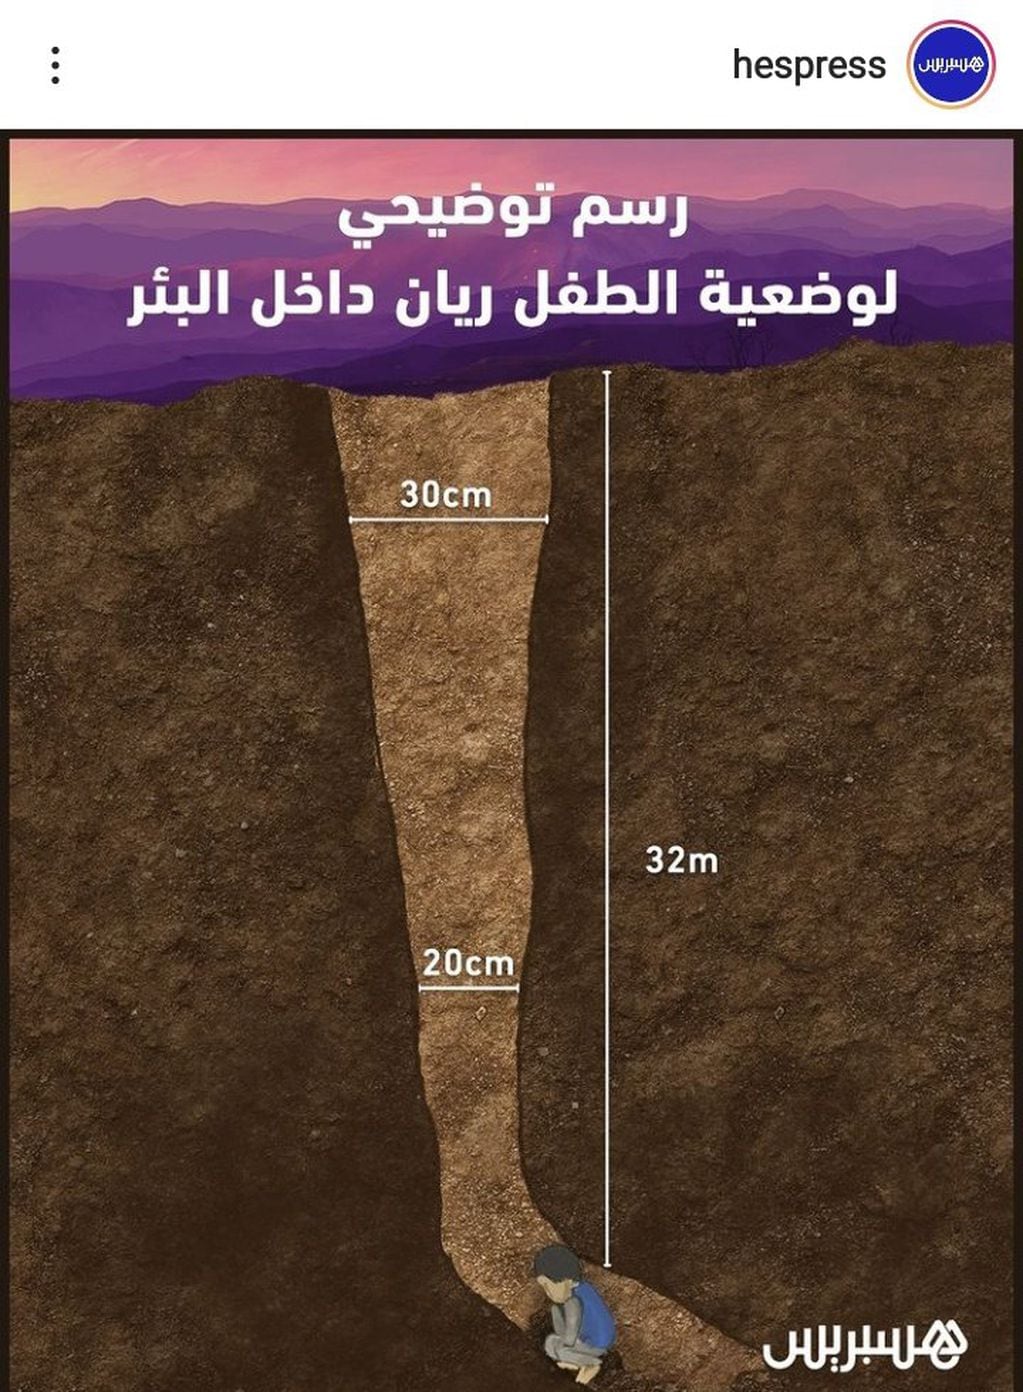 Así explicaba un medio marroquí lo difícil del operativo. El niño está a 32 metros de profundidad. (Twitter)